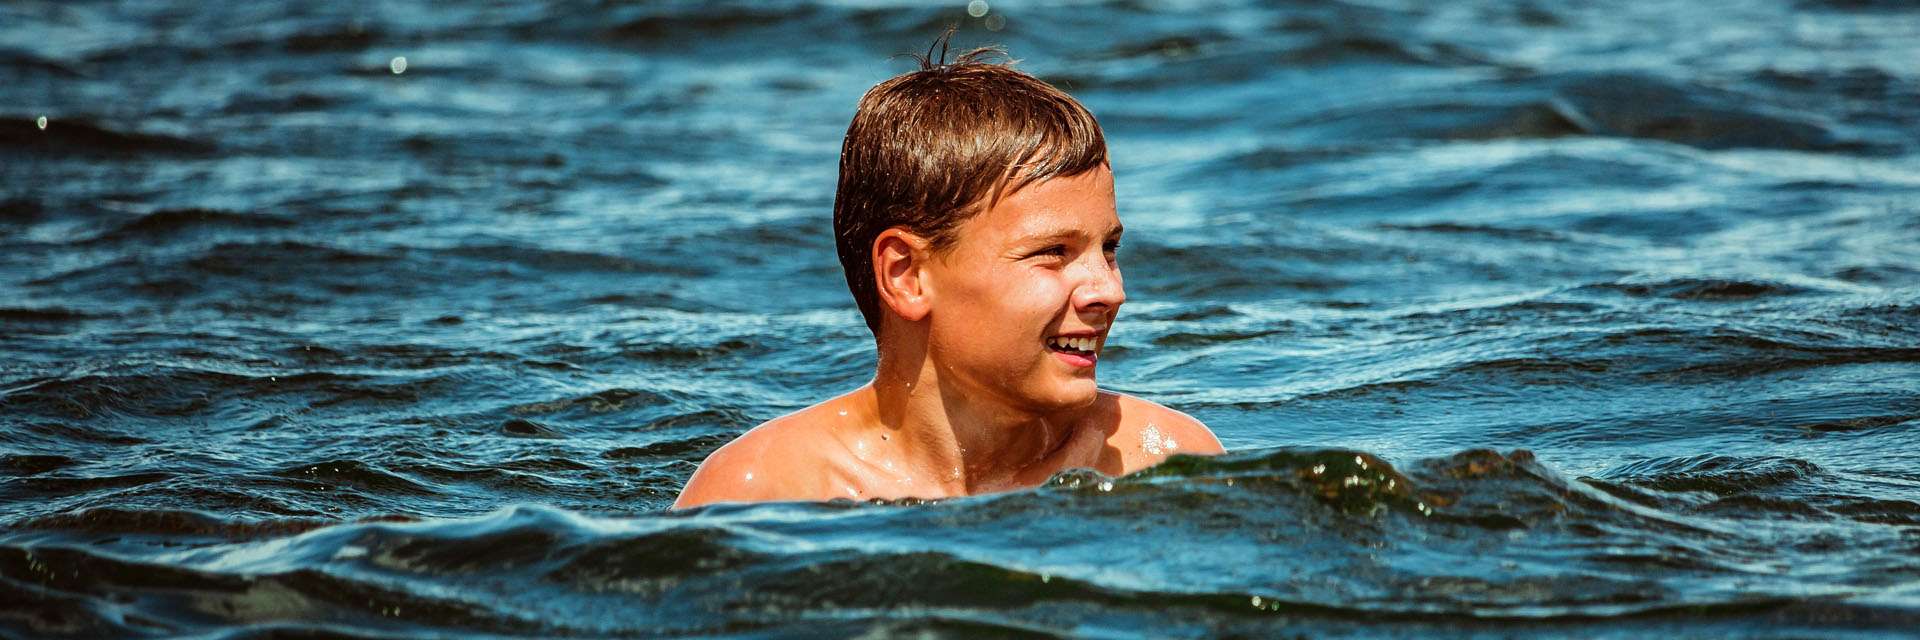 Foto: Junge im Wasser